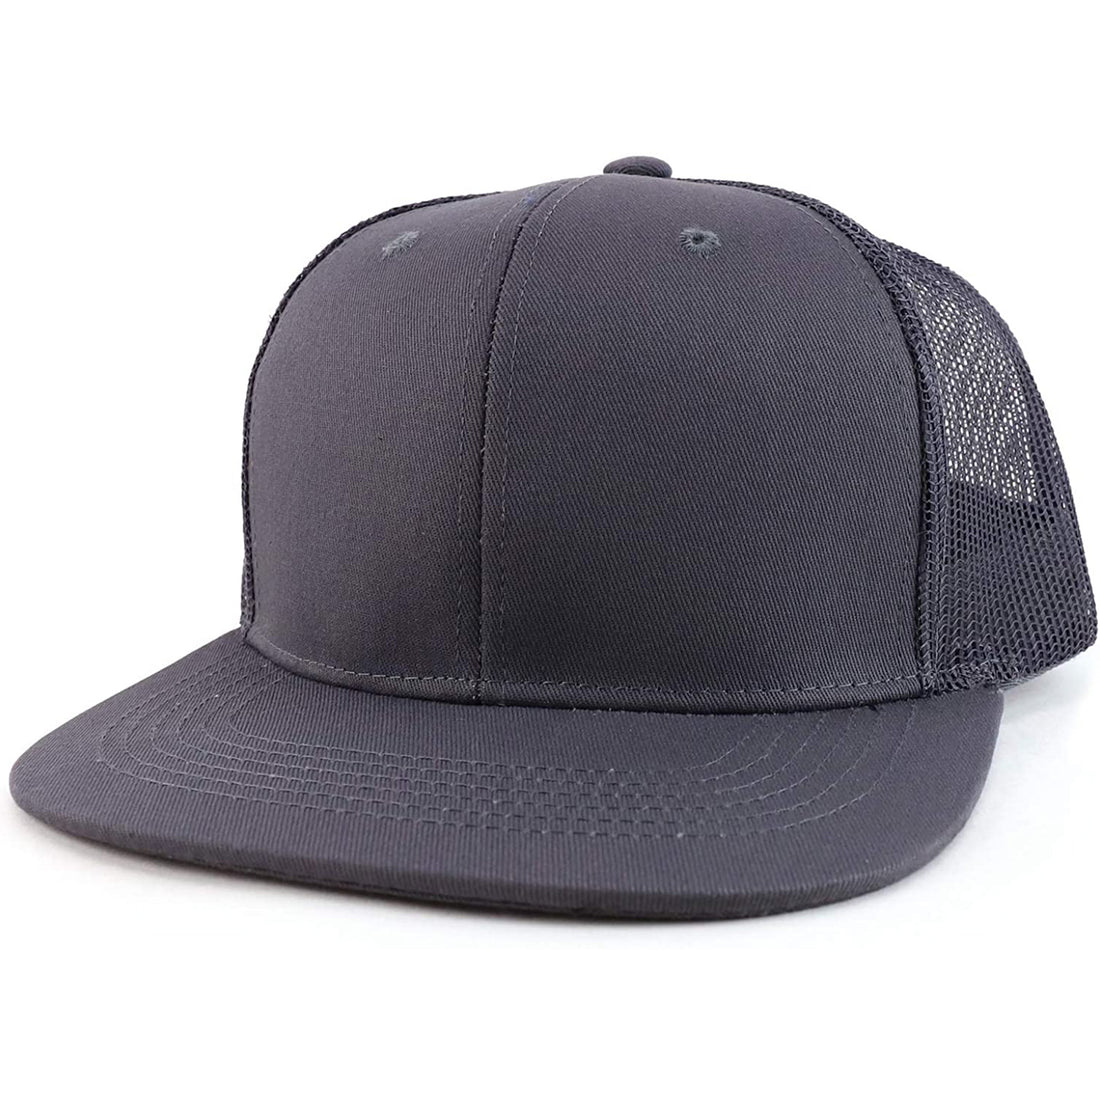 Trendy Apparel Shop Oversize 2XL Blank Plain Back Flatbill Snapback Baseball Cap